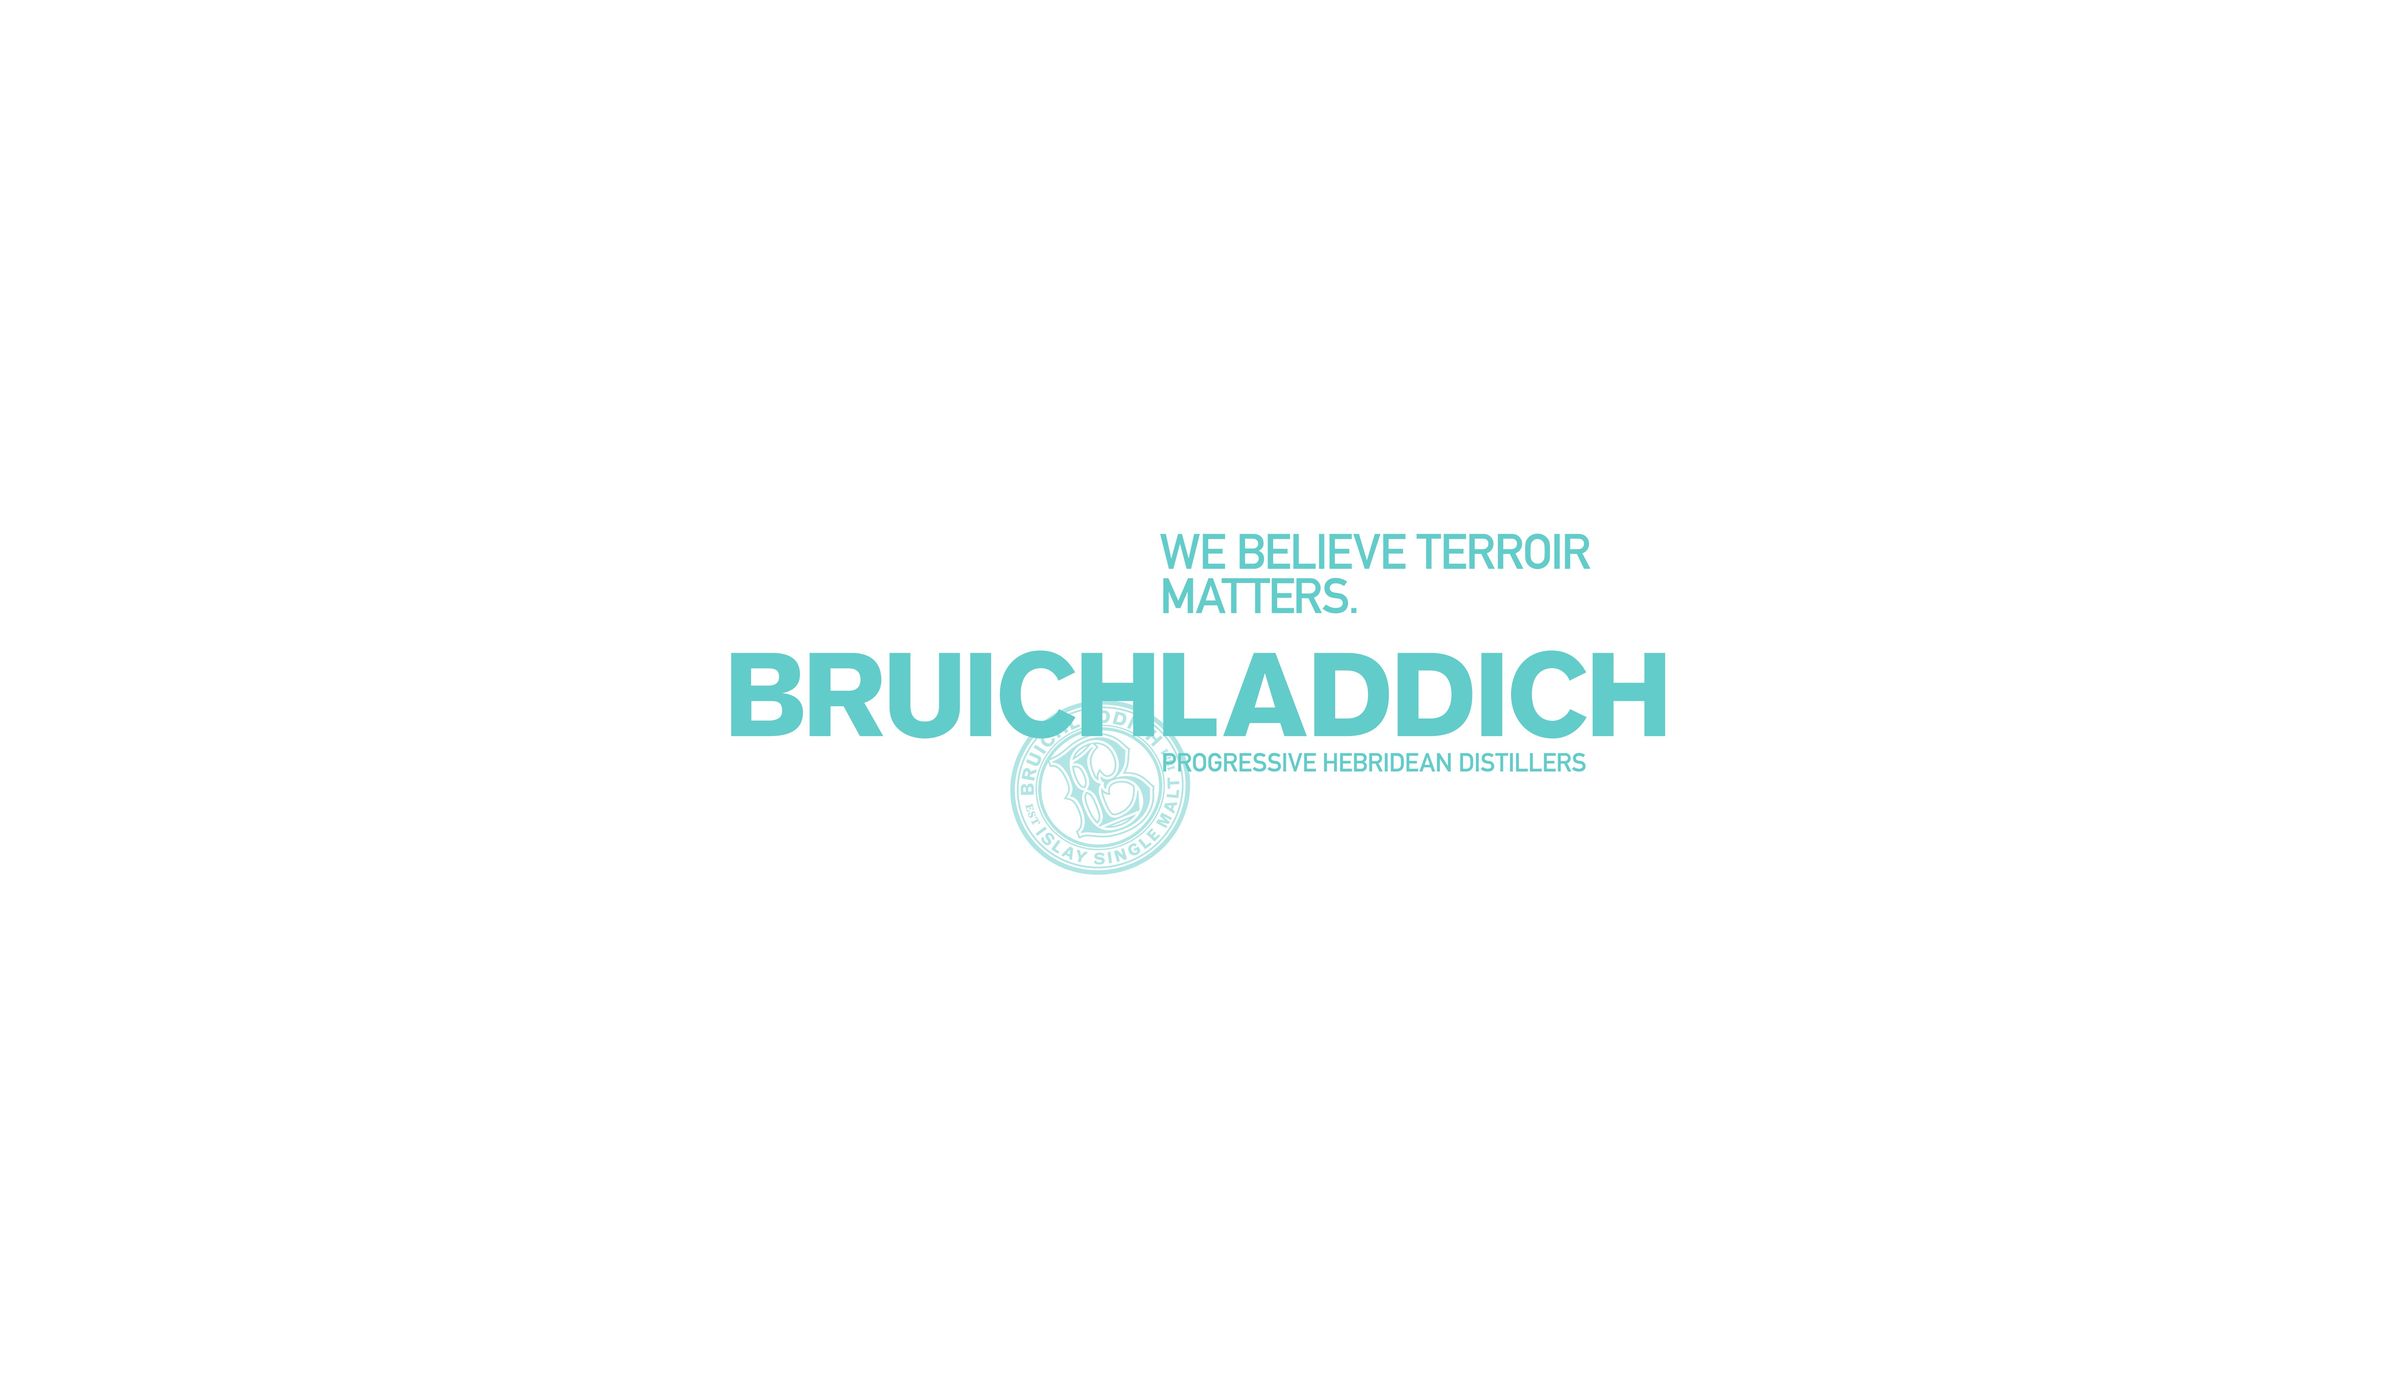 Bruichladdich